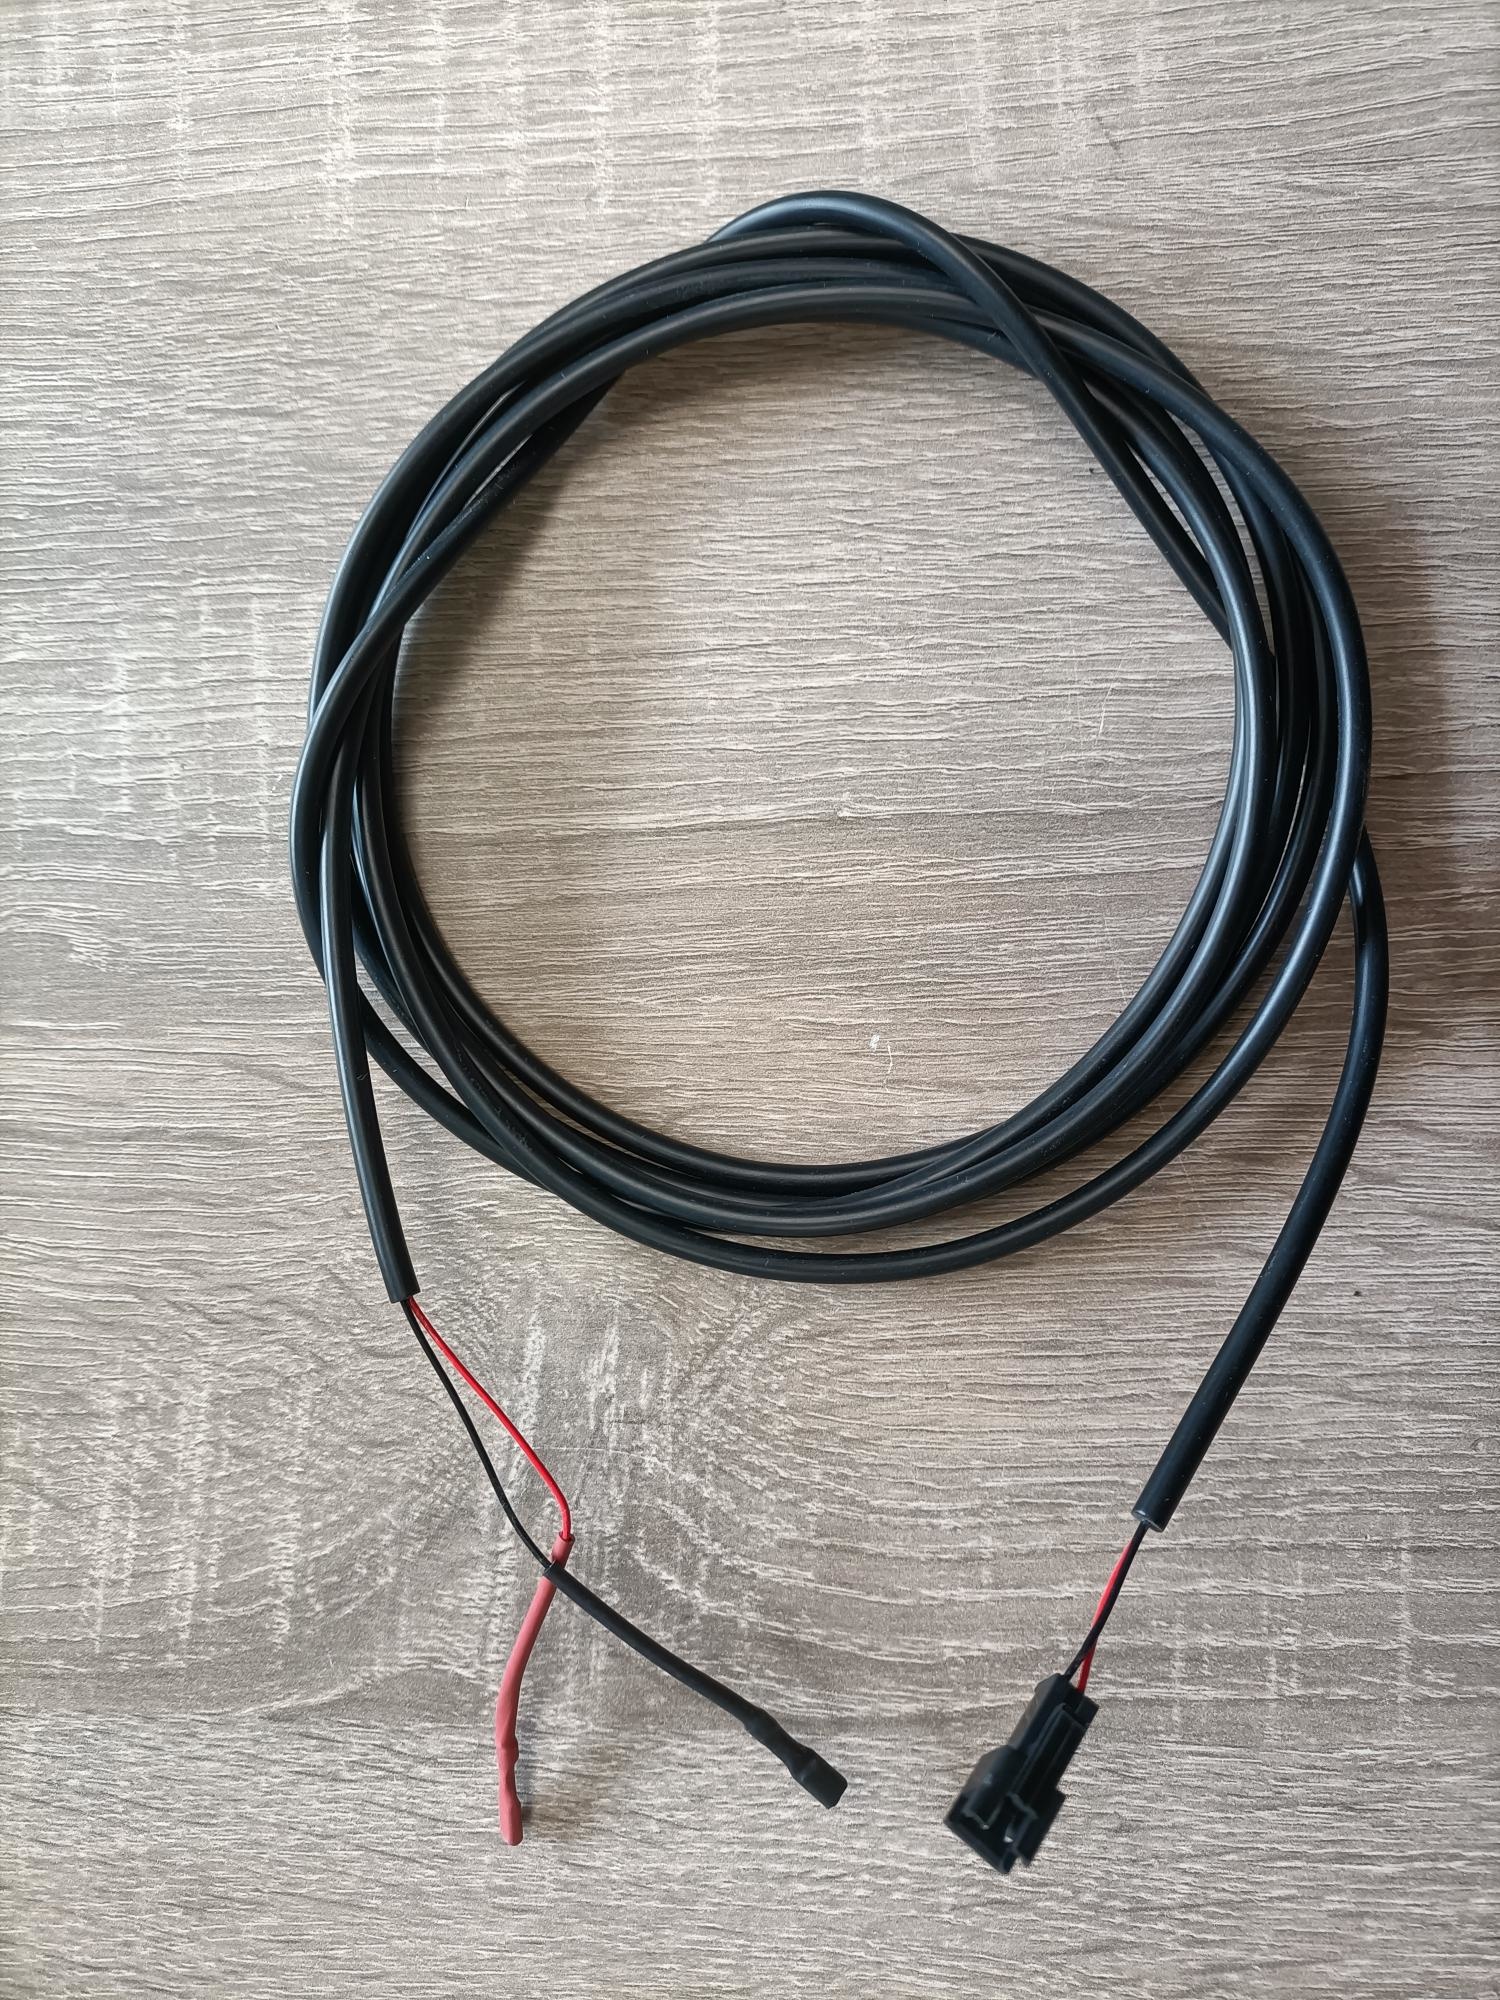 DAPU-Lichtkabel set pcd+kabel1500mm+kabel2500mm